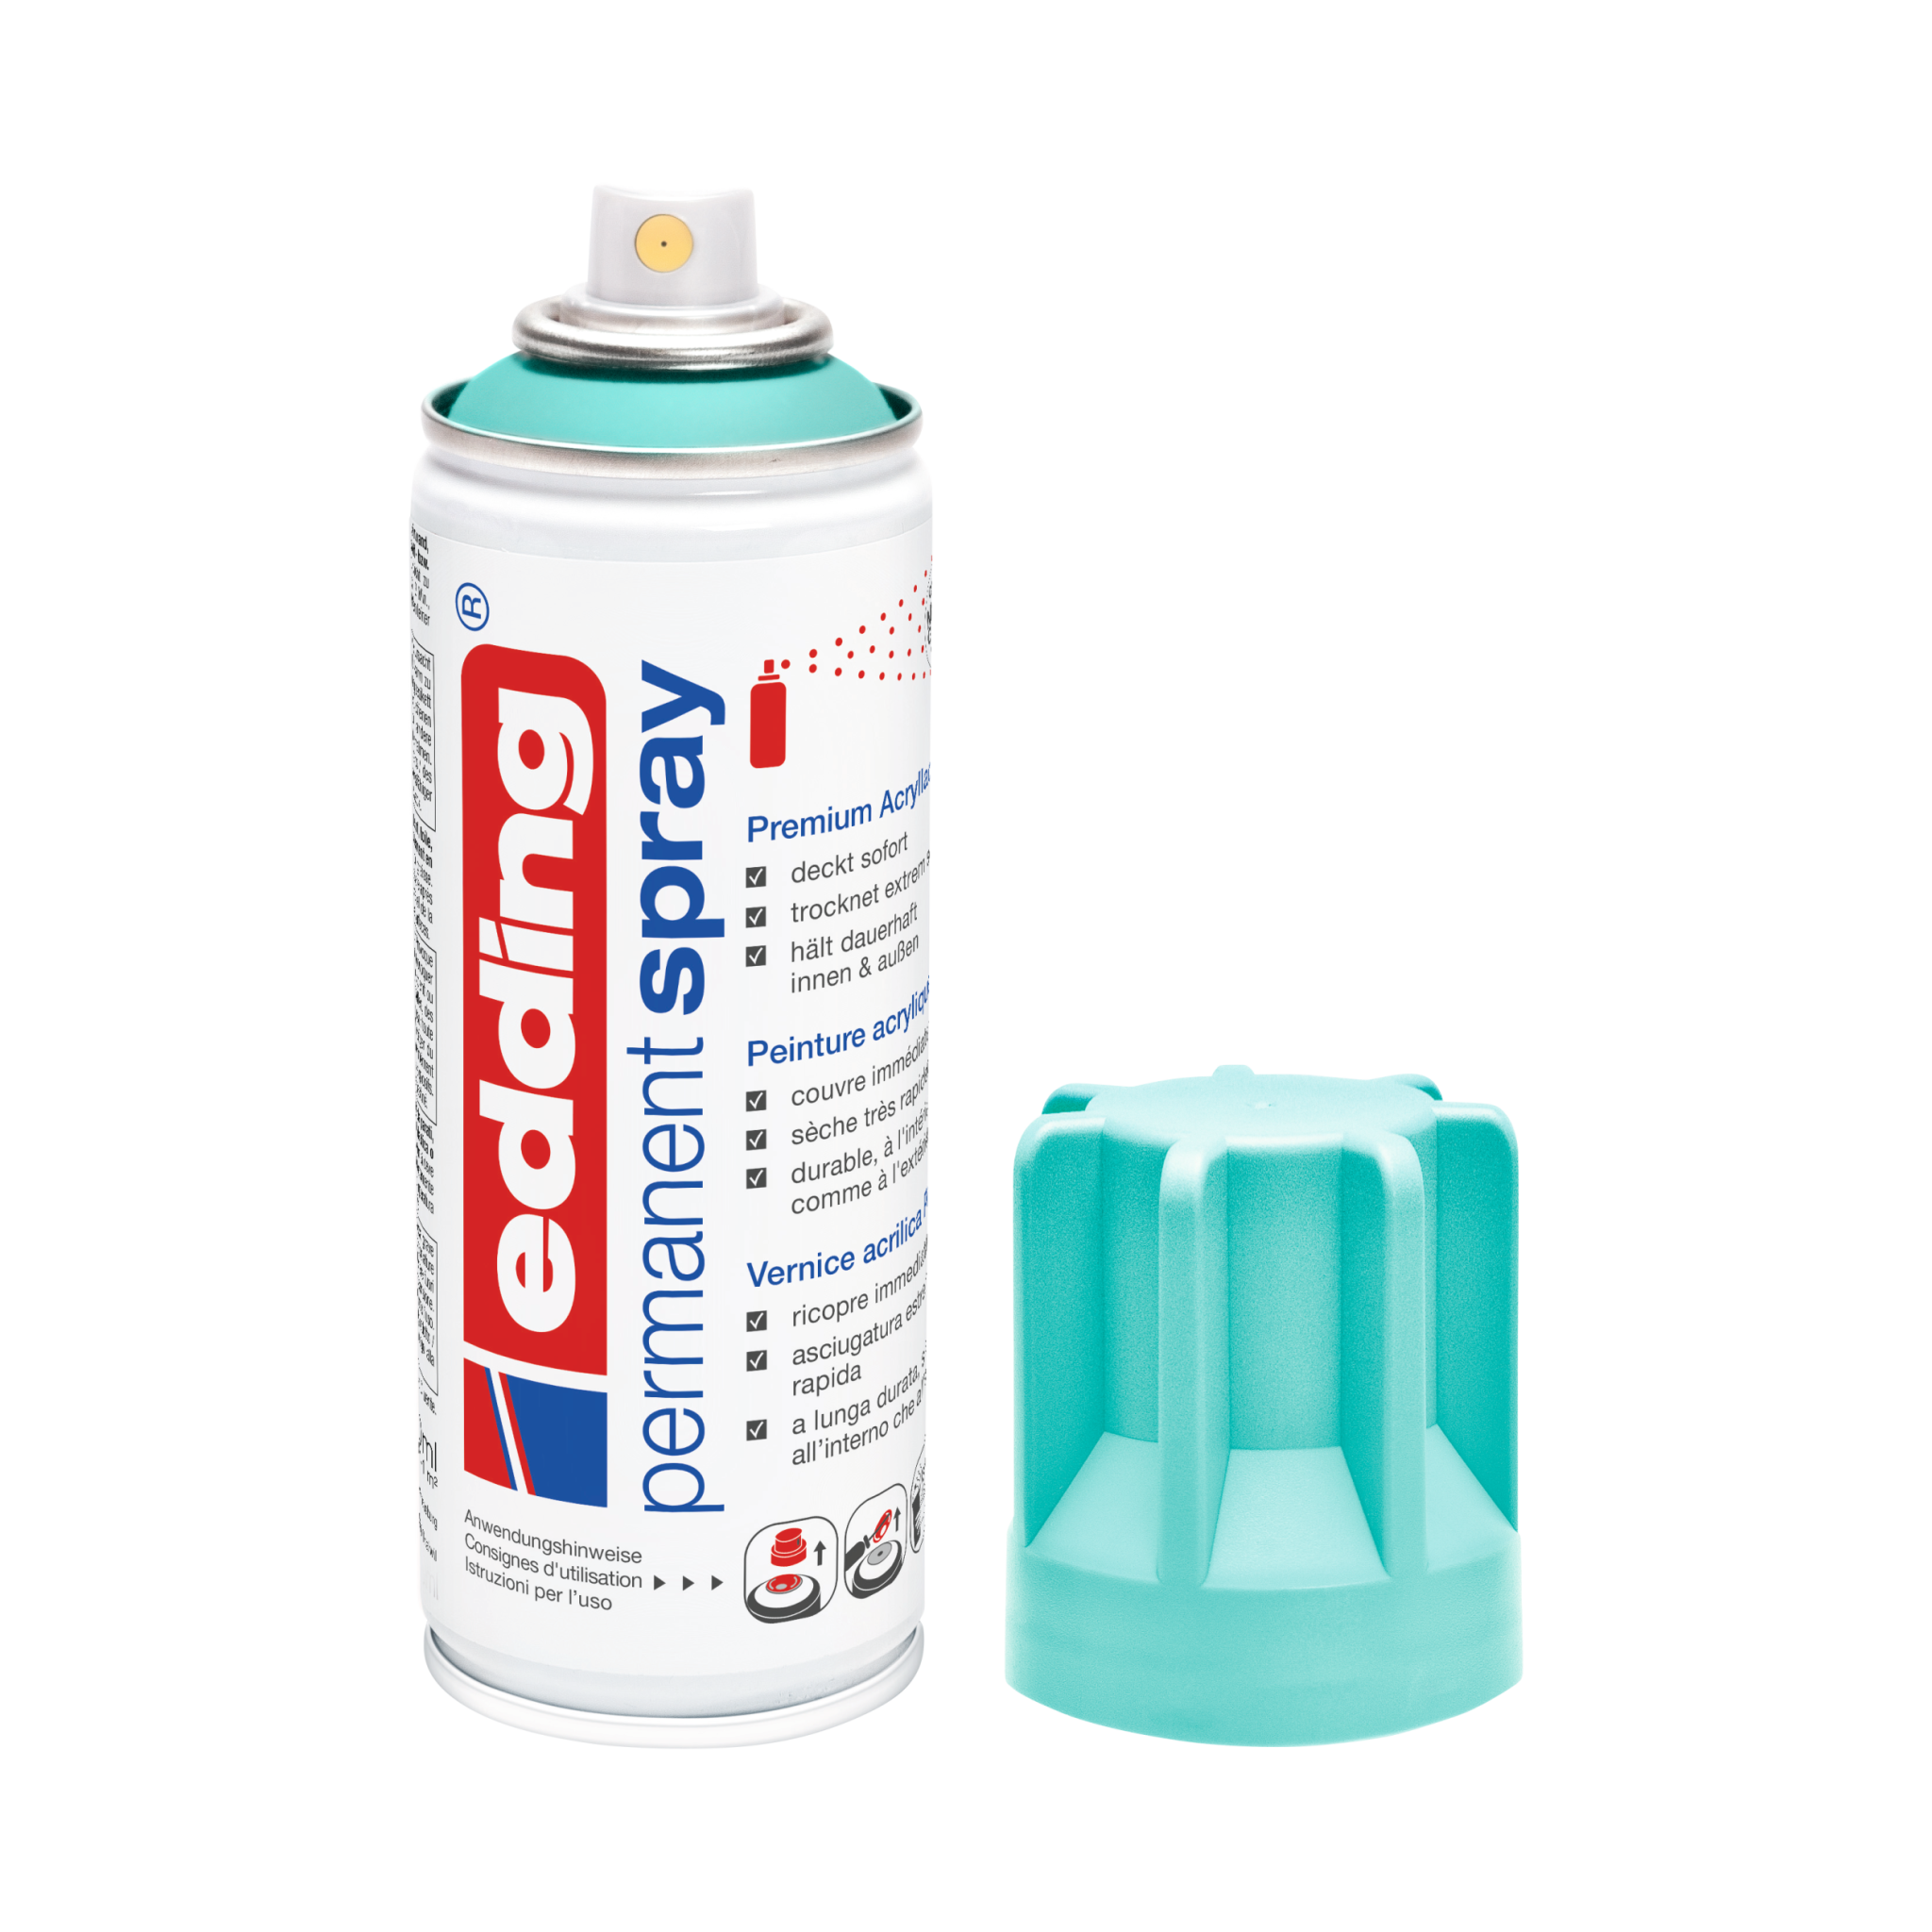 Eine Dose der Marke Edding, edding 5200 Permanentspray Acryllack Neon & kräftige Farben, in Weiß mit abgenommener Kappe, vor einem weißen Hintergrund.